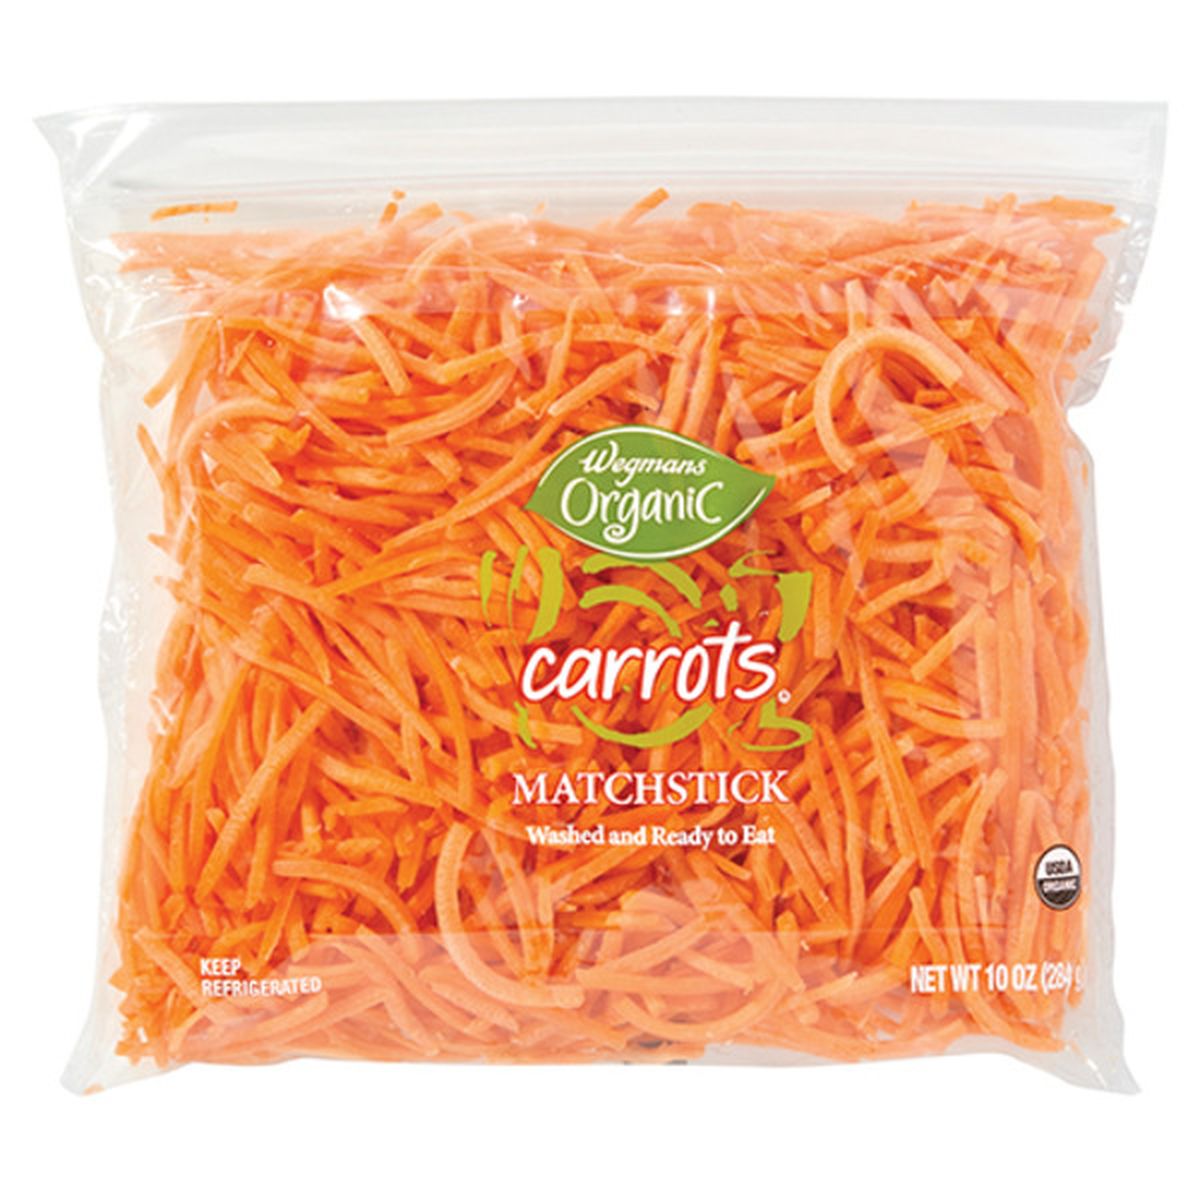 Calories in Wegmans Organic Matchstick Carrots